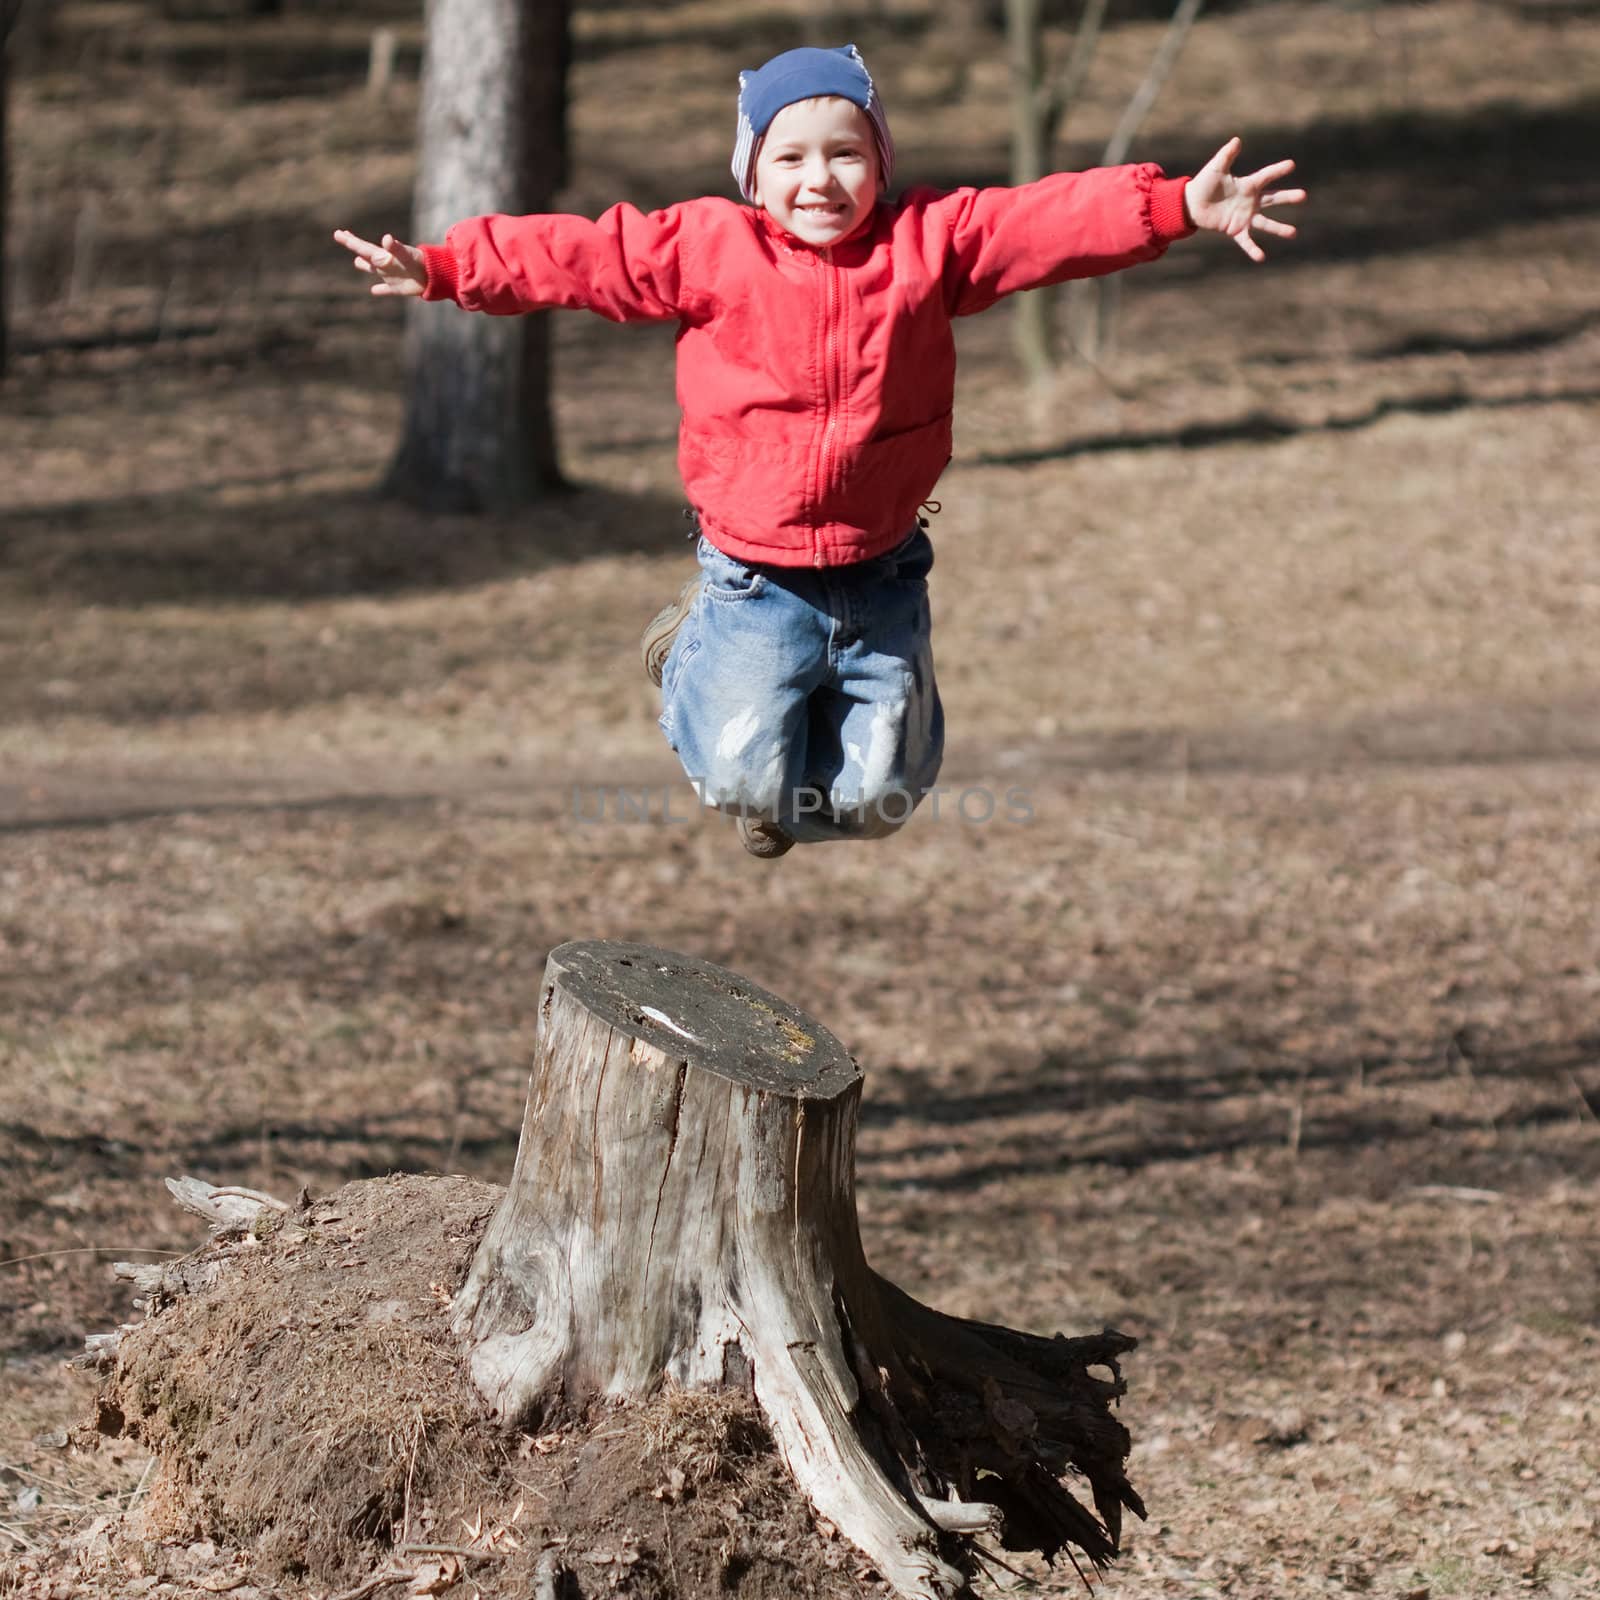 Fun jump - little sport child high jumping up long